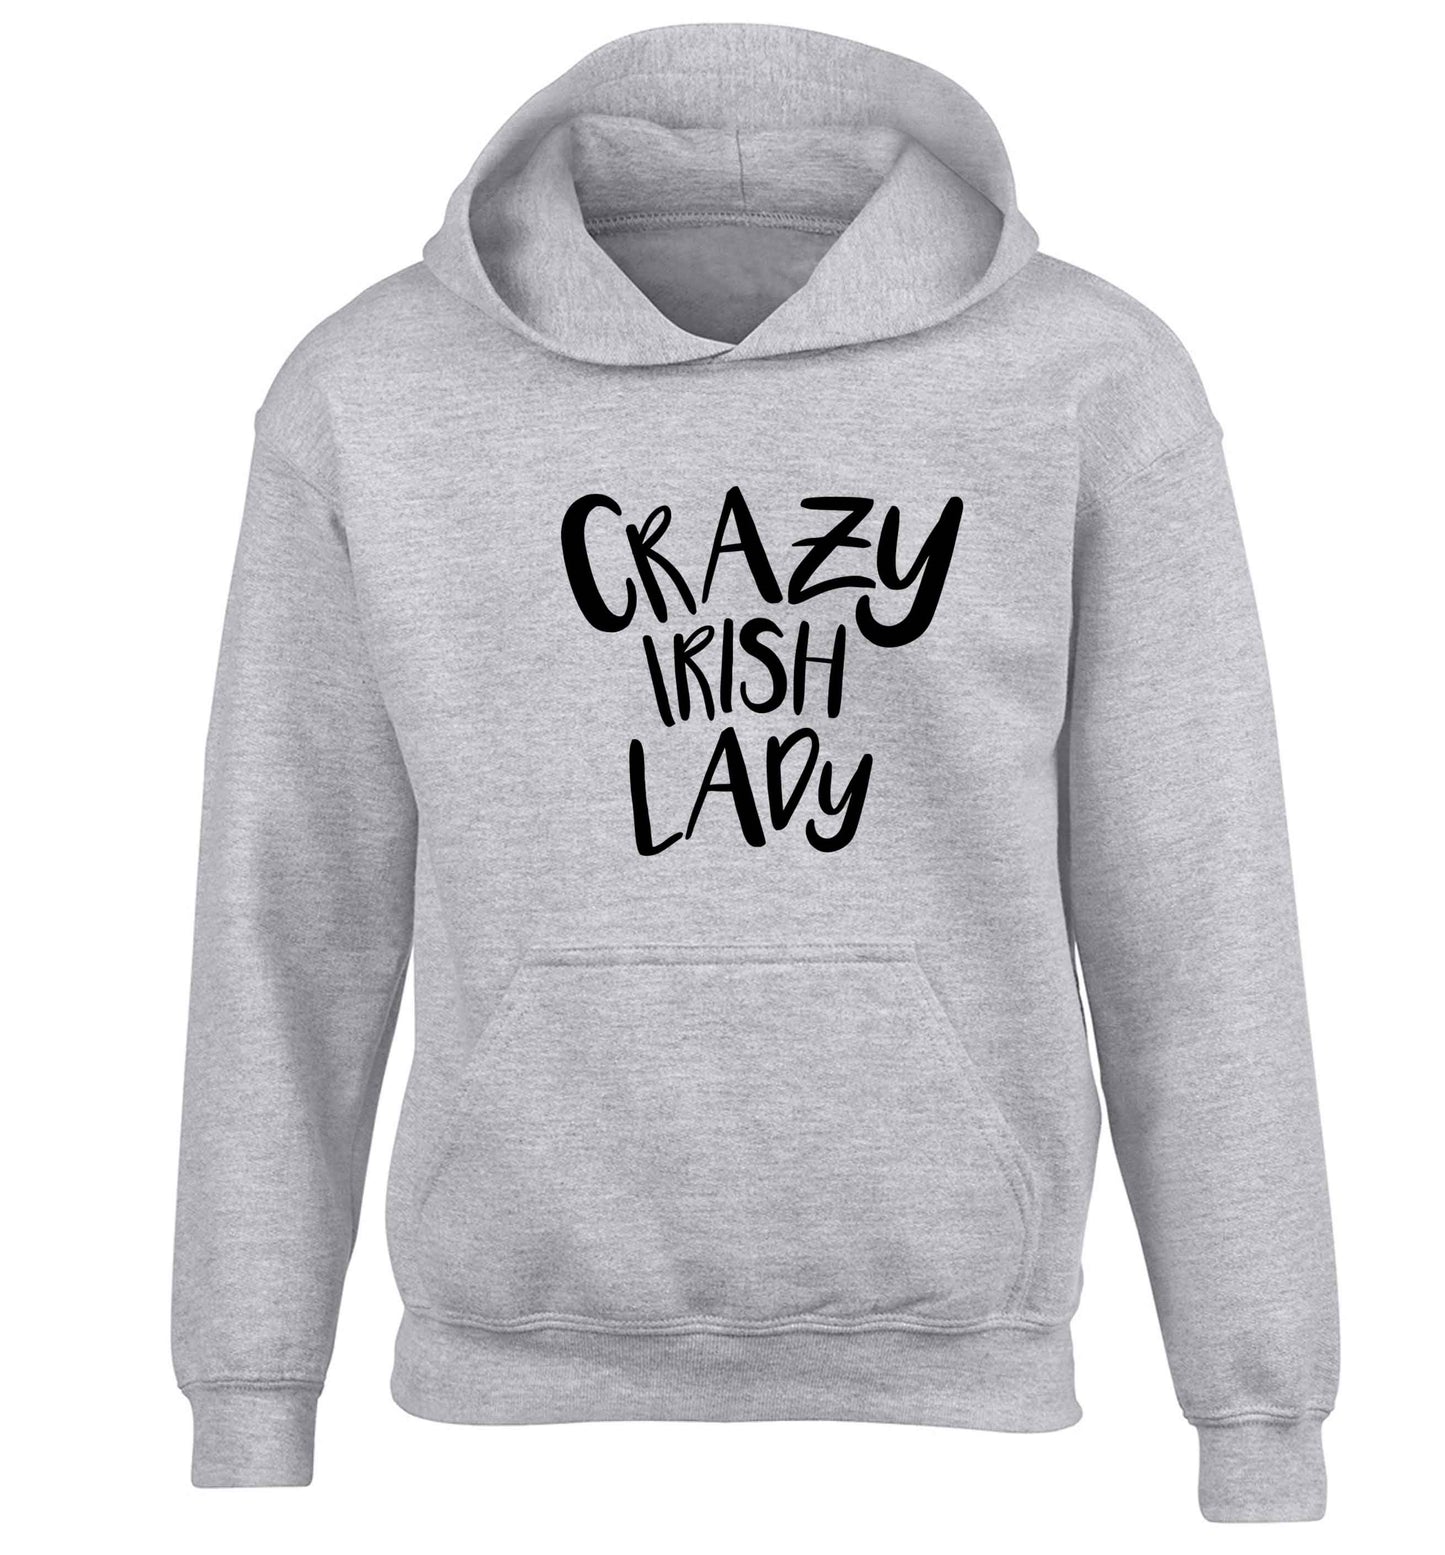 Crazy Irish lady children's grey hoodie 12-13 Years